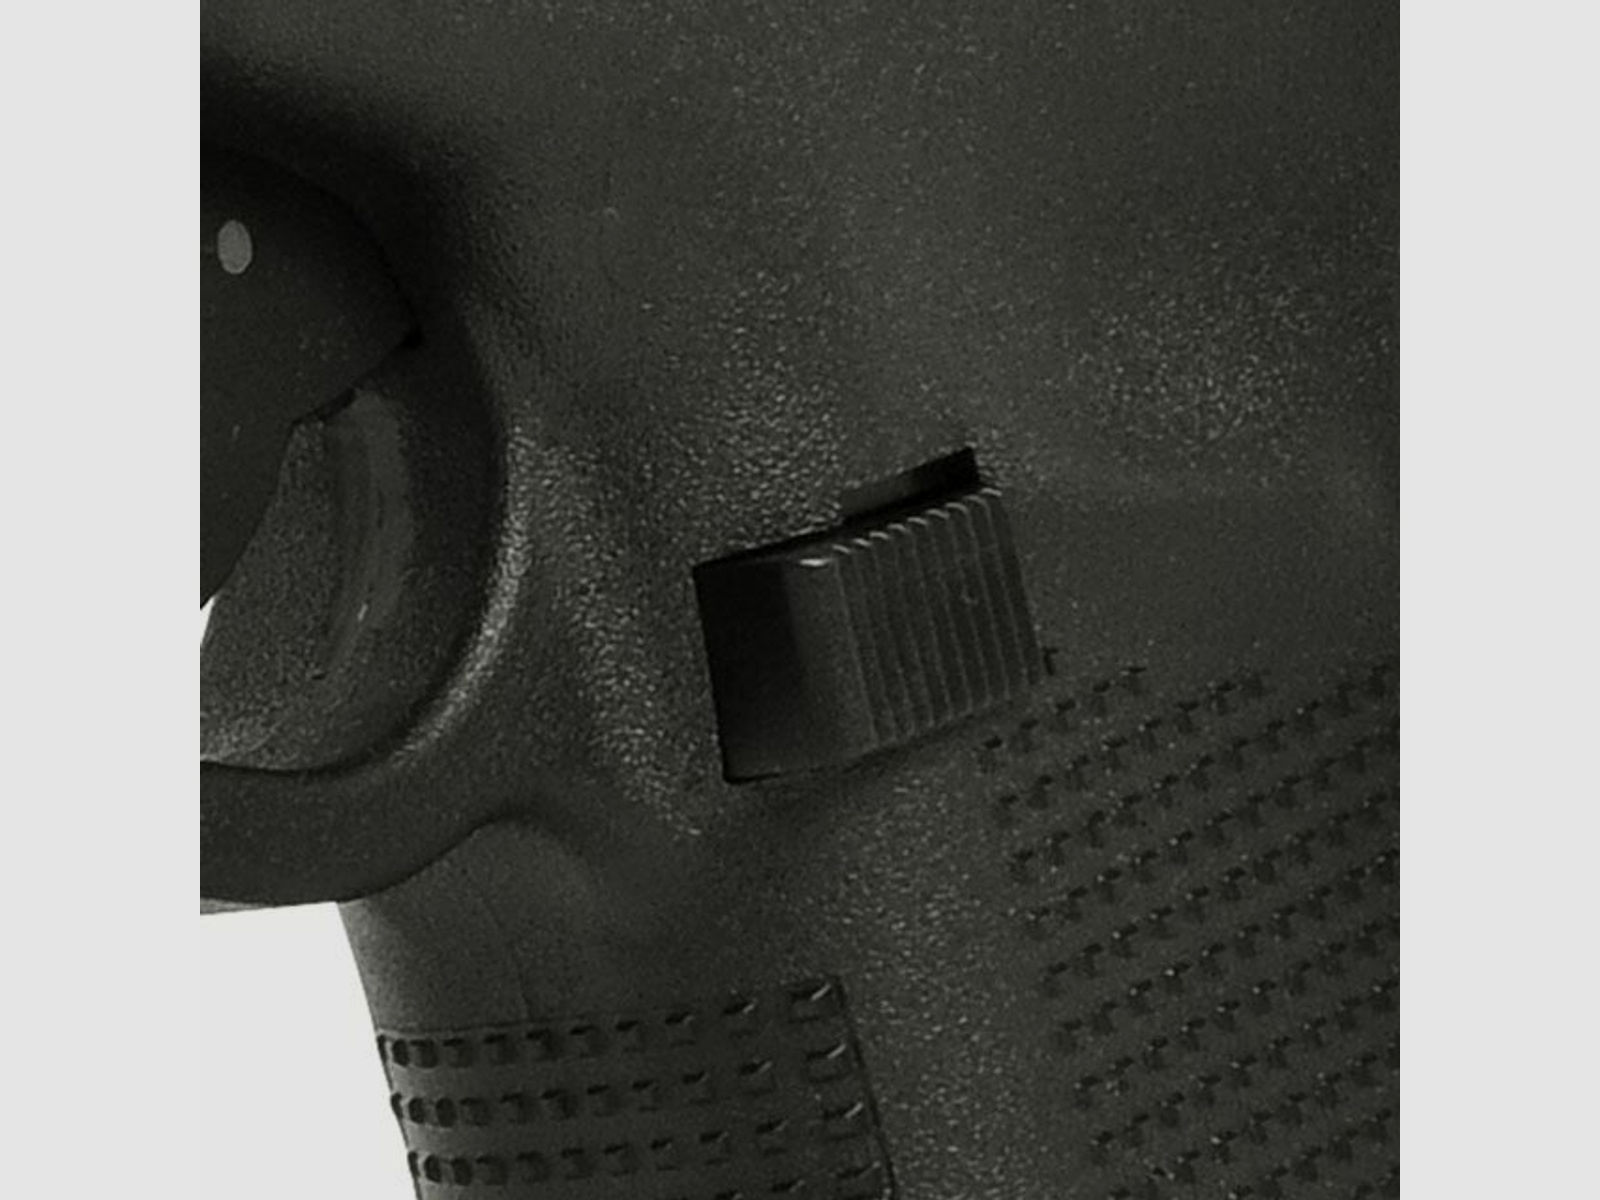 Glock 35 M.O.S. Gen4